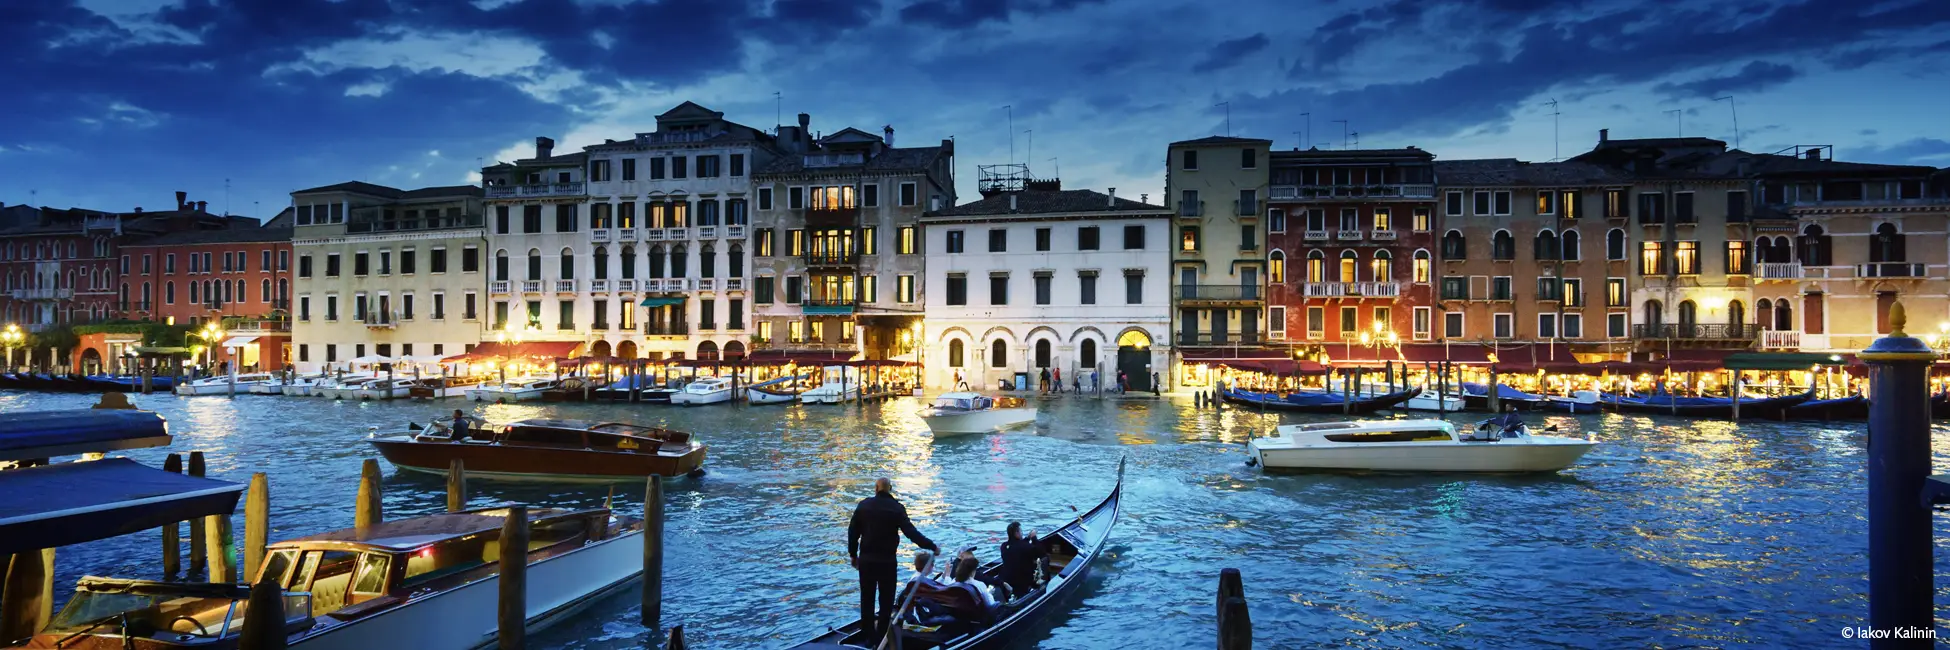 Slider canal de Venise de nuit 